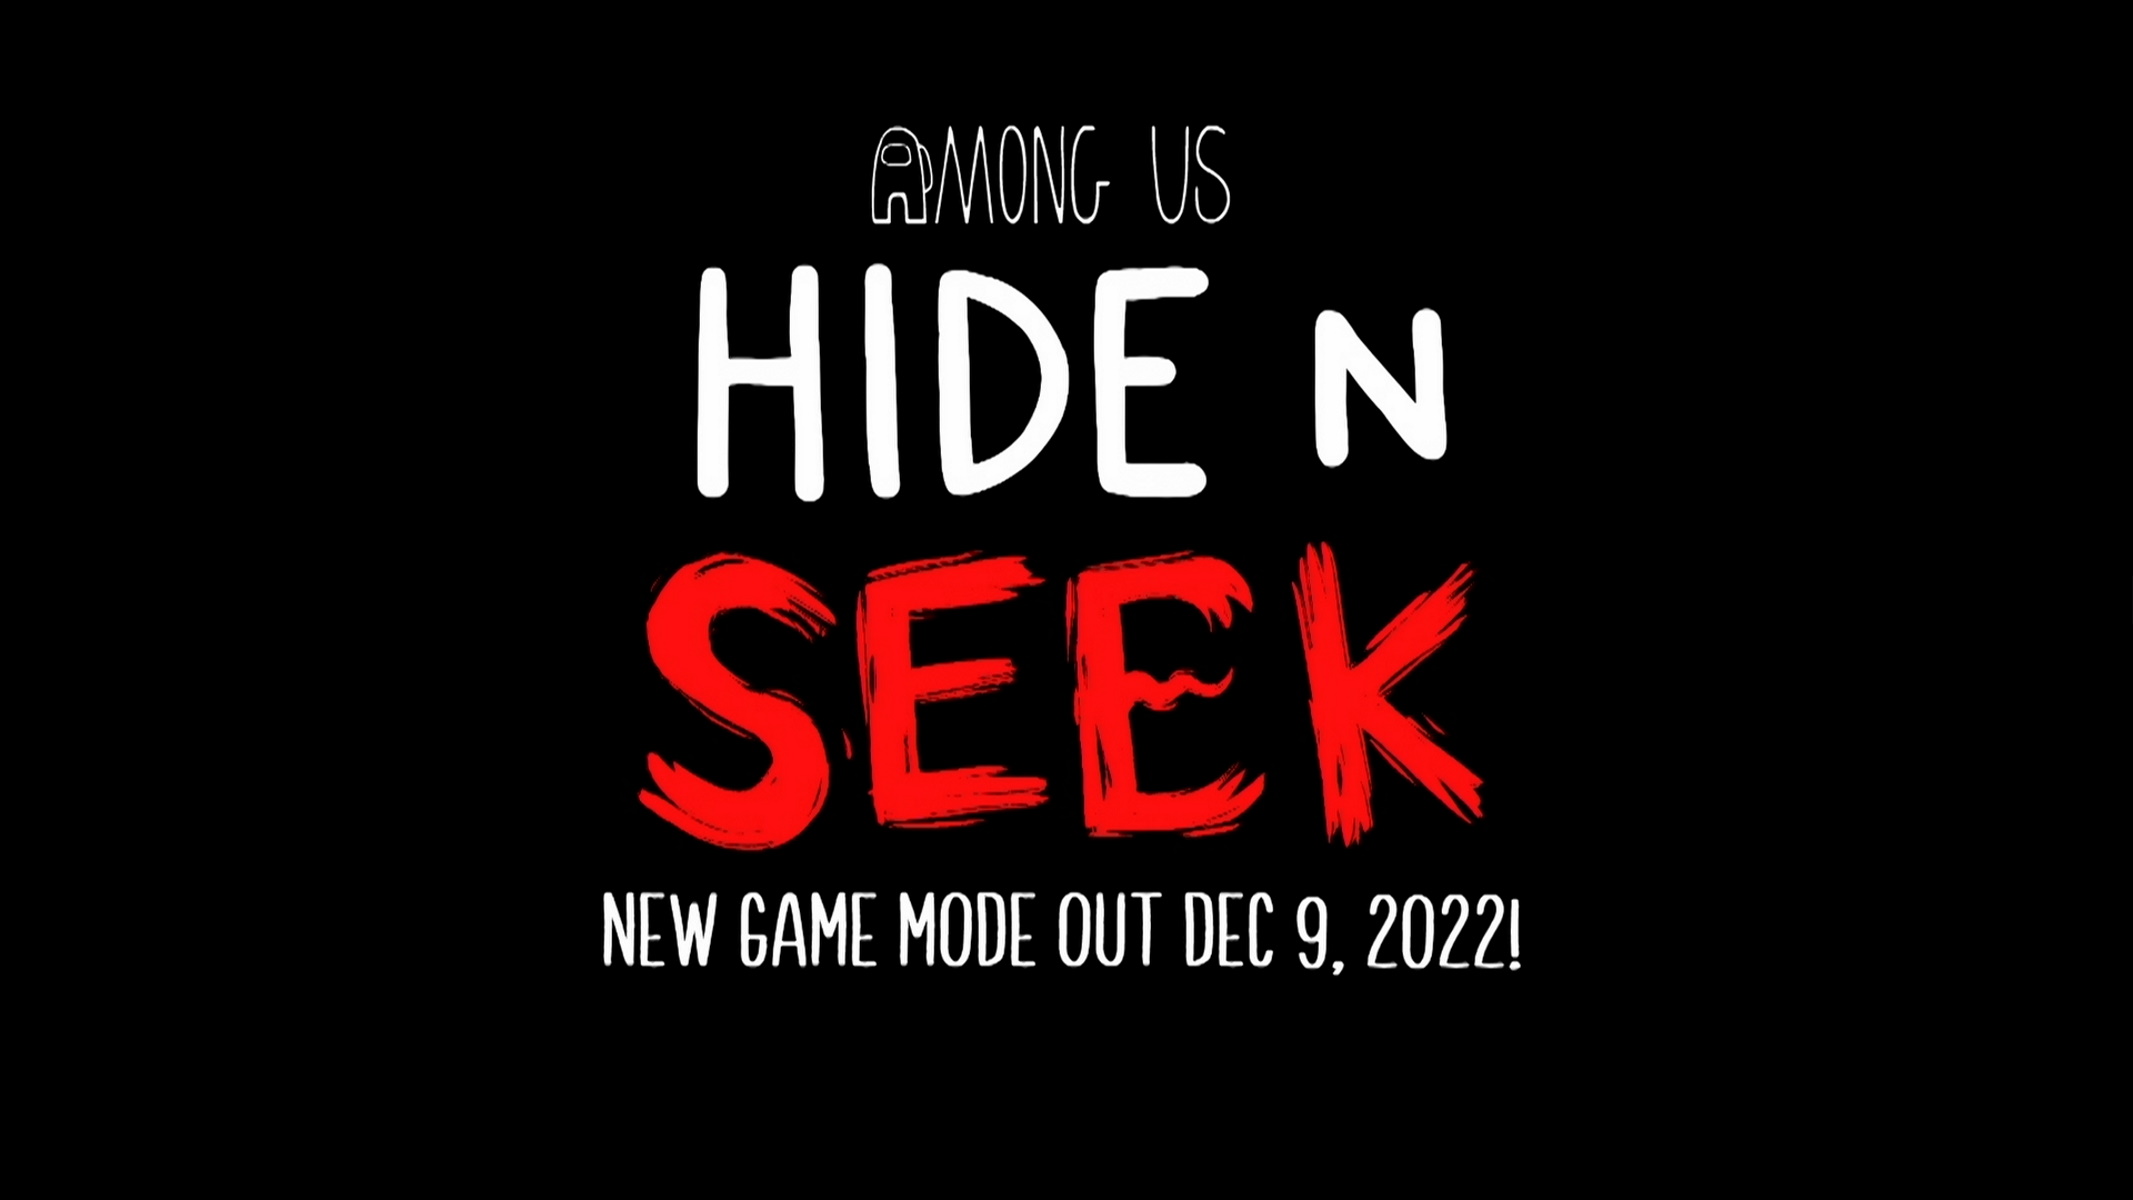 Among us hide and seek